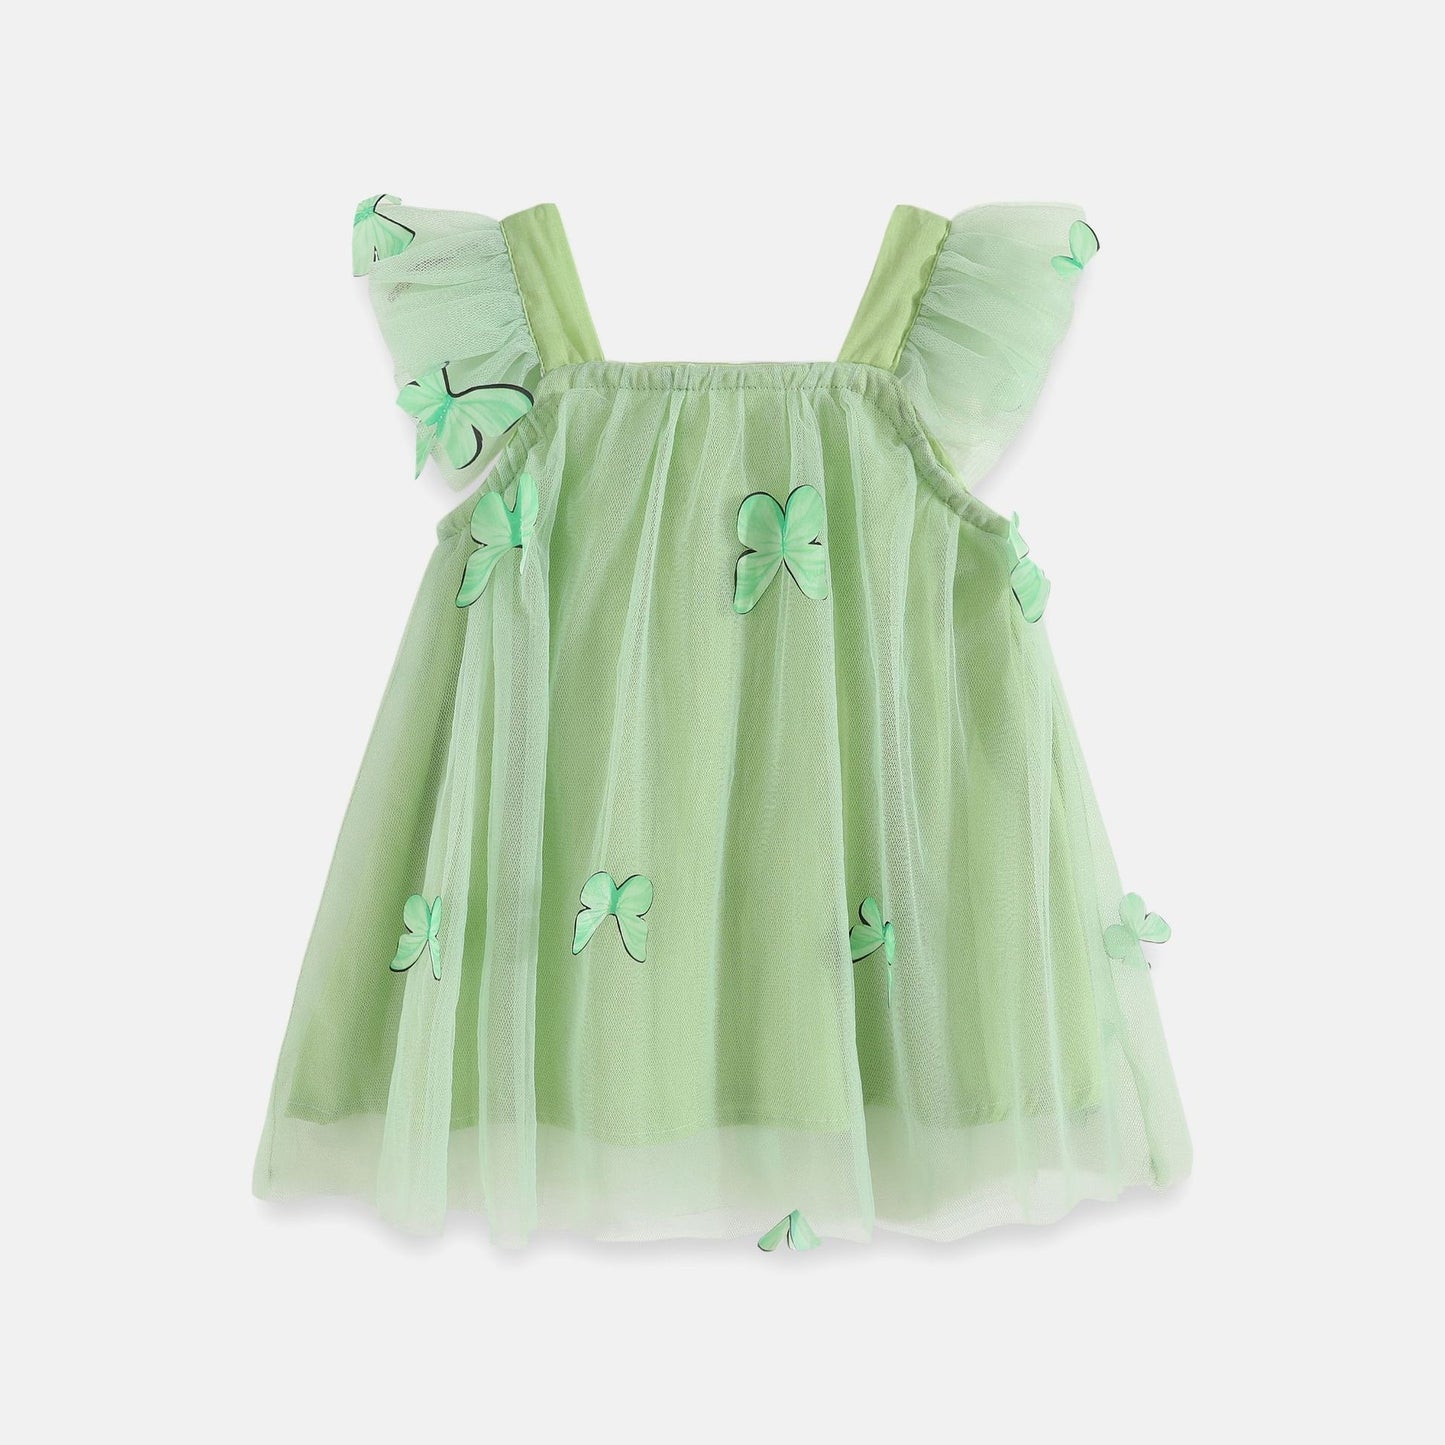 Schmetterling-Prinzessinnen Kleid aus Nylon